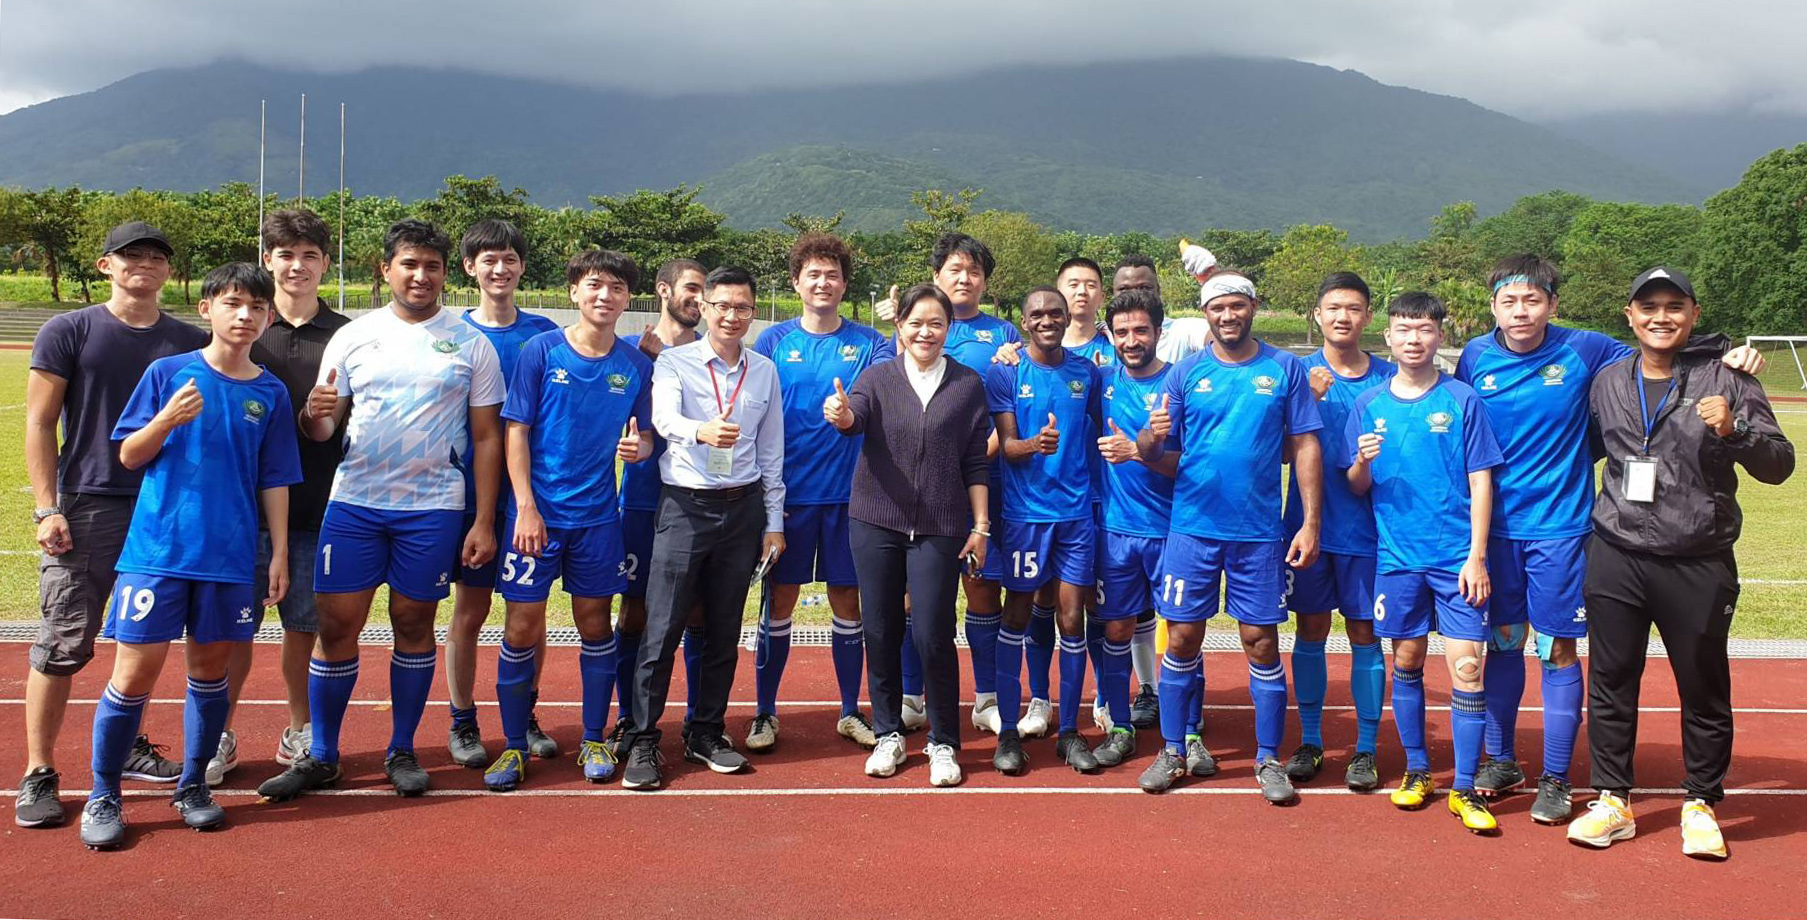 慈大國際化足球隊成員來自9國，體現多元文化交融。